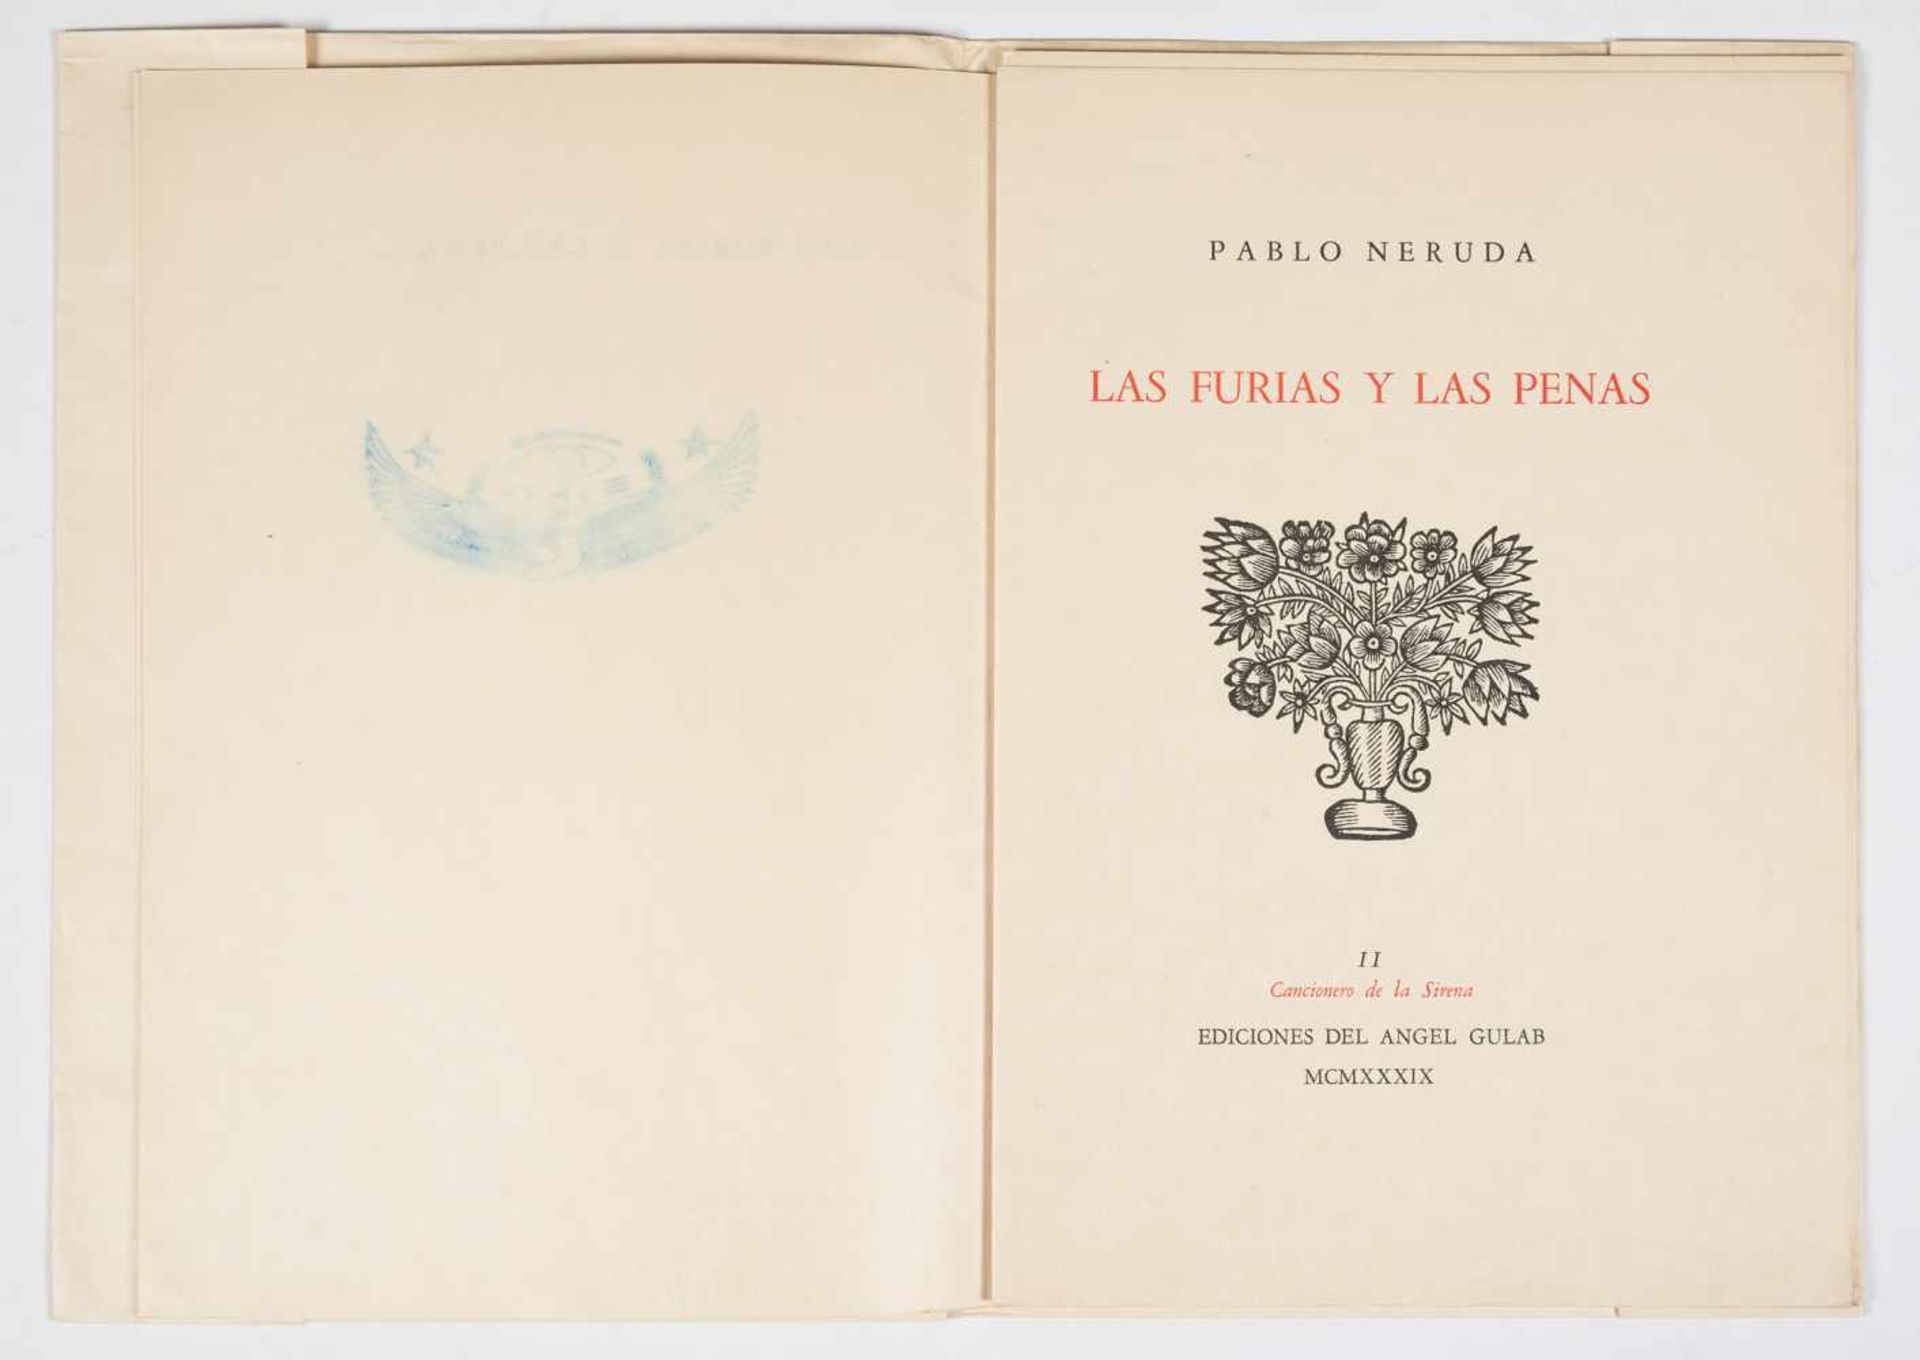 Neruda, Pablo. "Las furias y las penas". 1st edition. Buenos Aires: Published by Ediciones del Ángel - Image 2 of 3